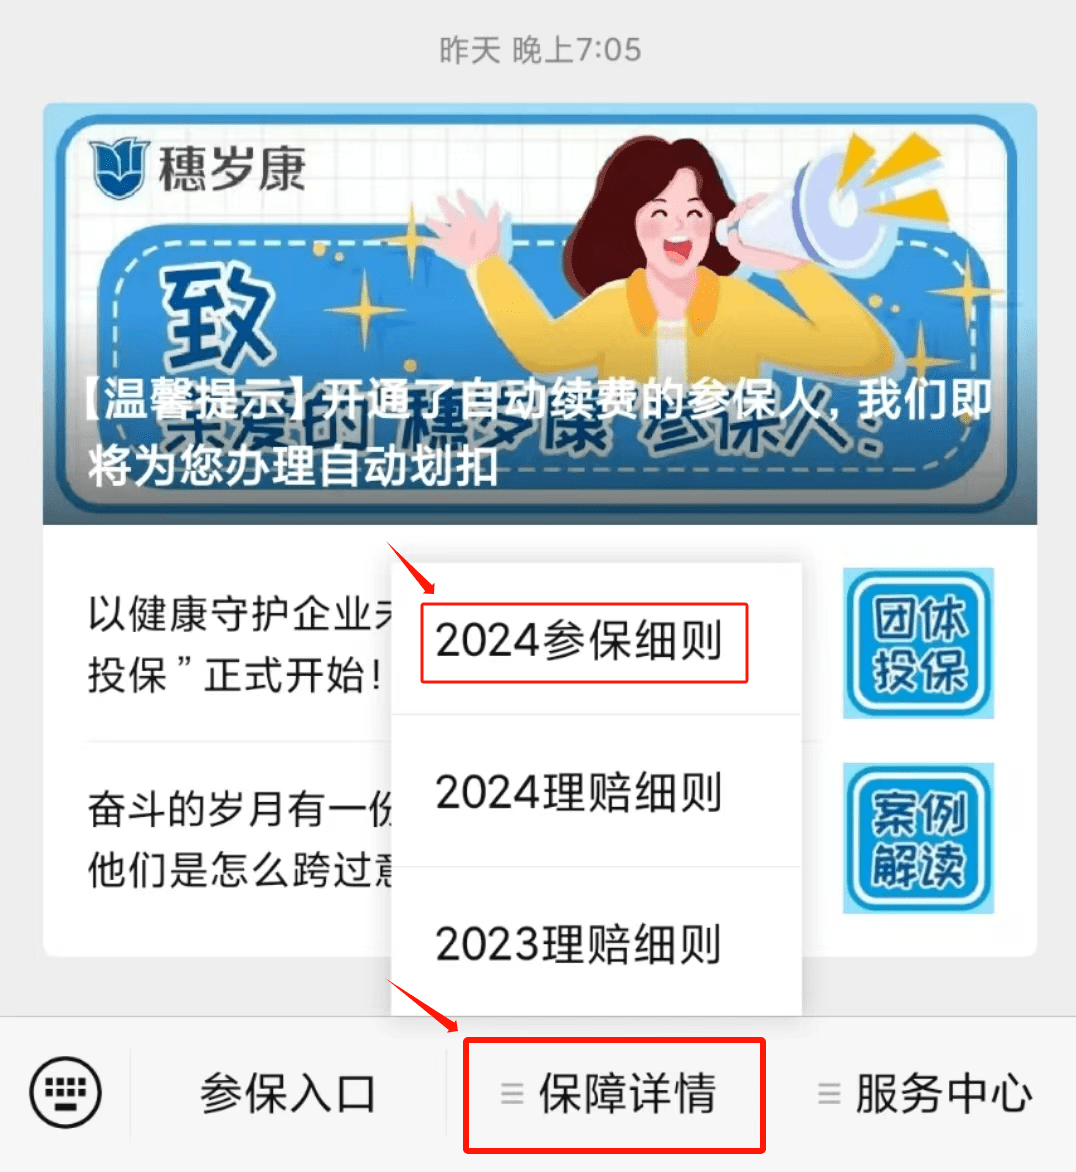 穗岁康,广州政府网,中国广州发布等官方微信公众号,会推出穗岁康